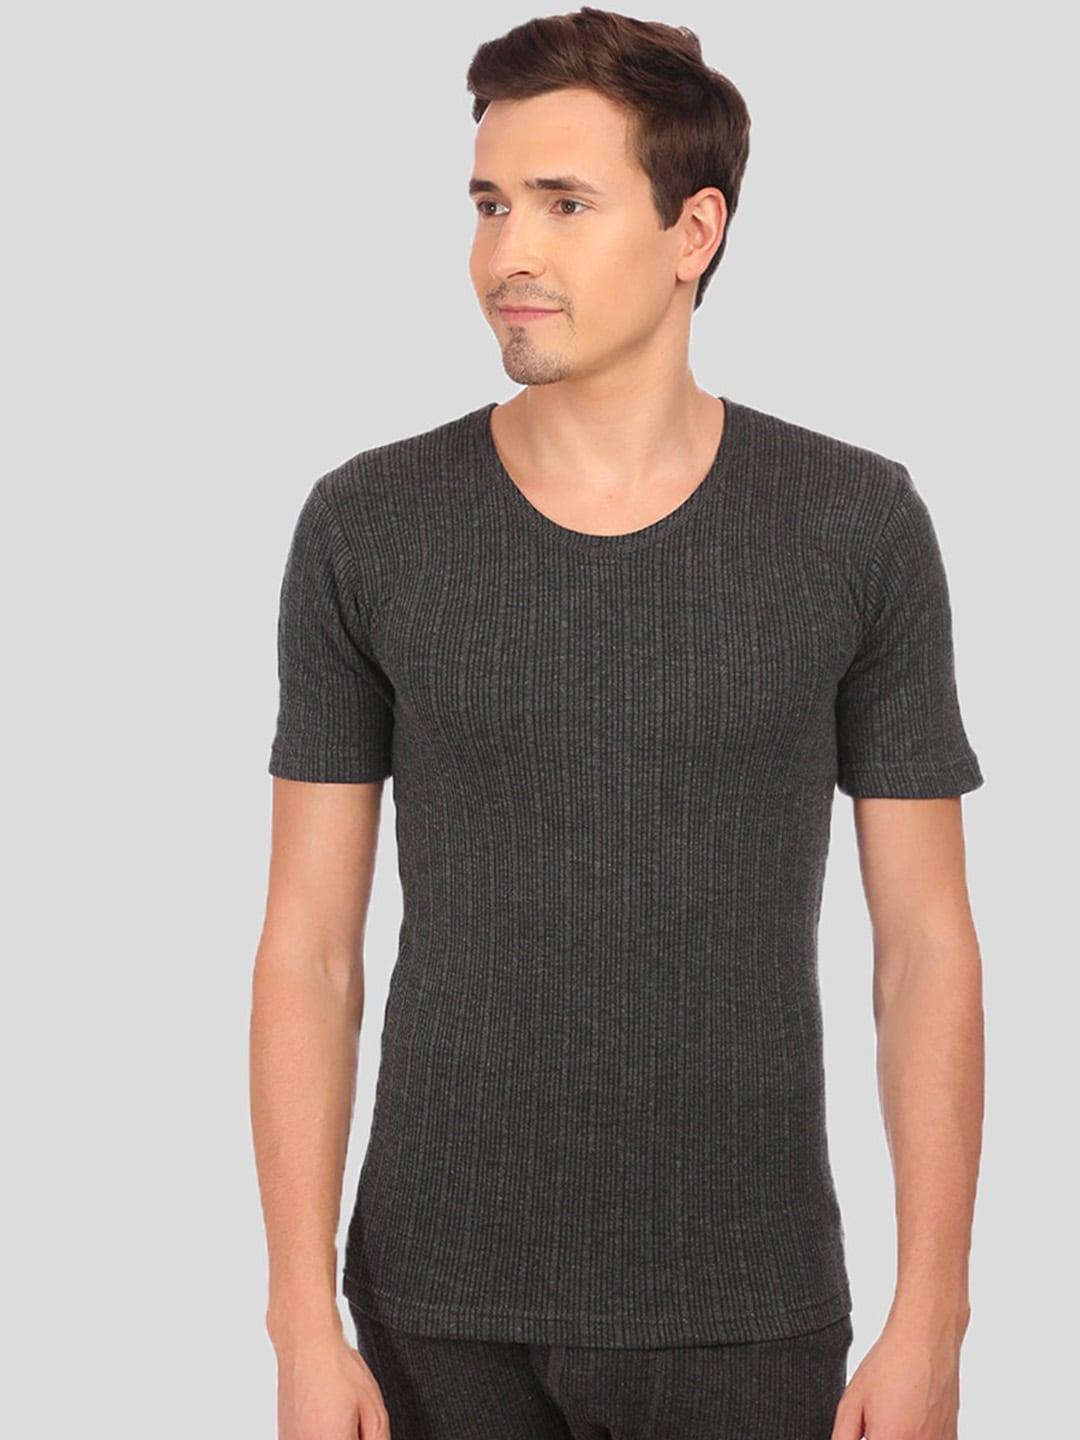 neva-men-black-striped-thermal-t-shirt